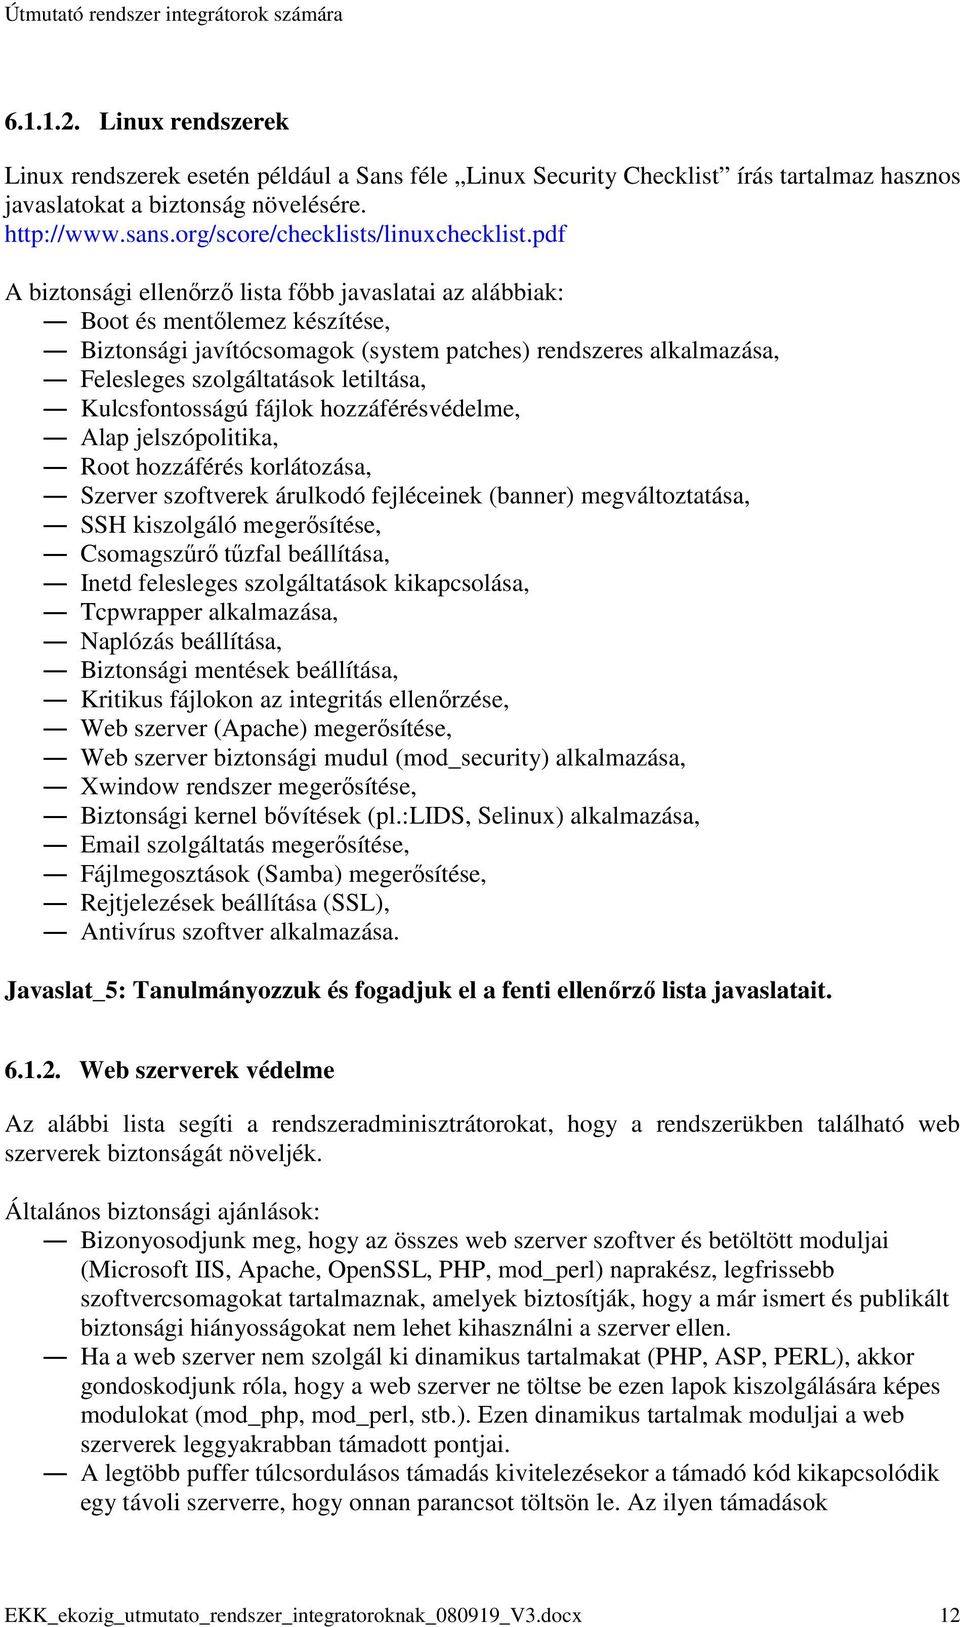 pdf A biztonsági ellenırzı lista fıbb javaslatai az alábbiak: Boot és mentılemez készítése, Biztonsági javítócsomagok (system patches) rendszeres alkalmazása, Felesleges szolgáltatások letiltása,